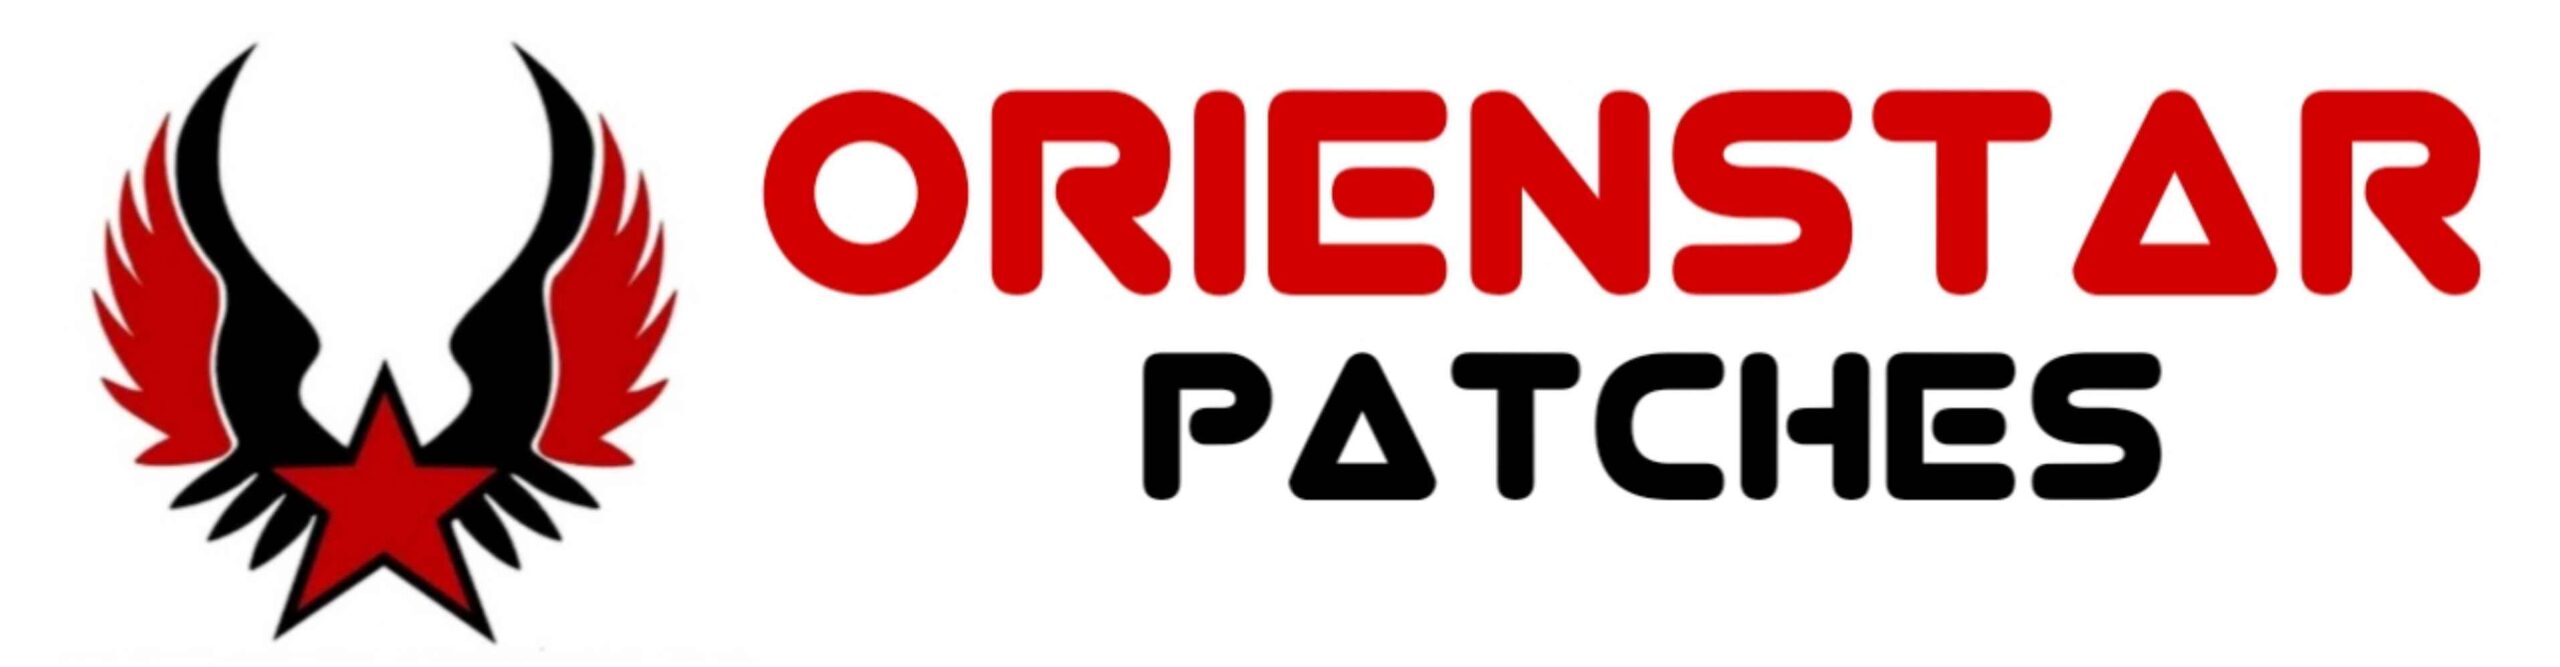 Orienstar Patches logo